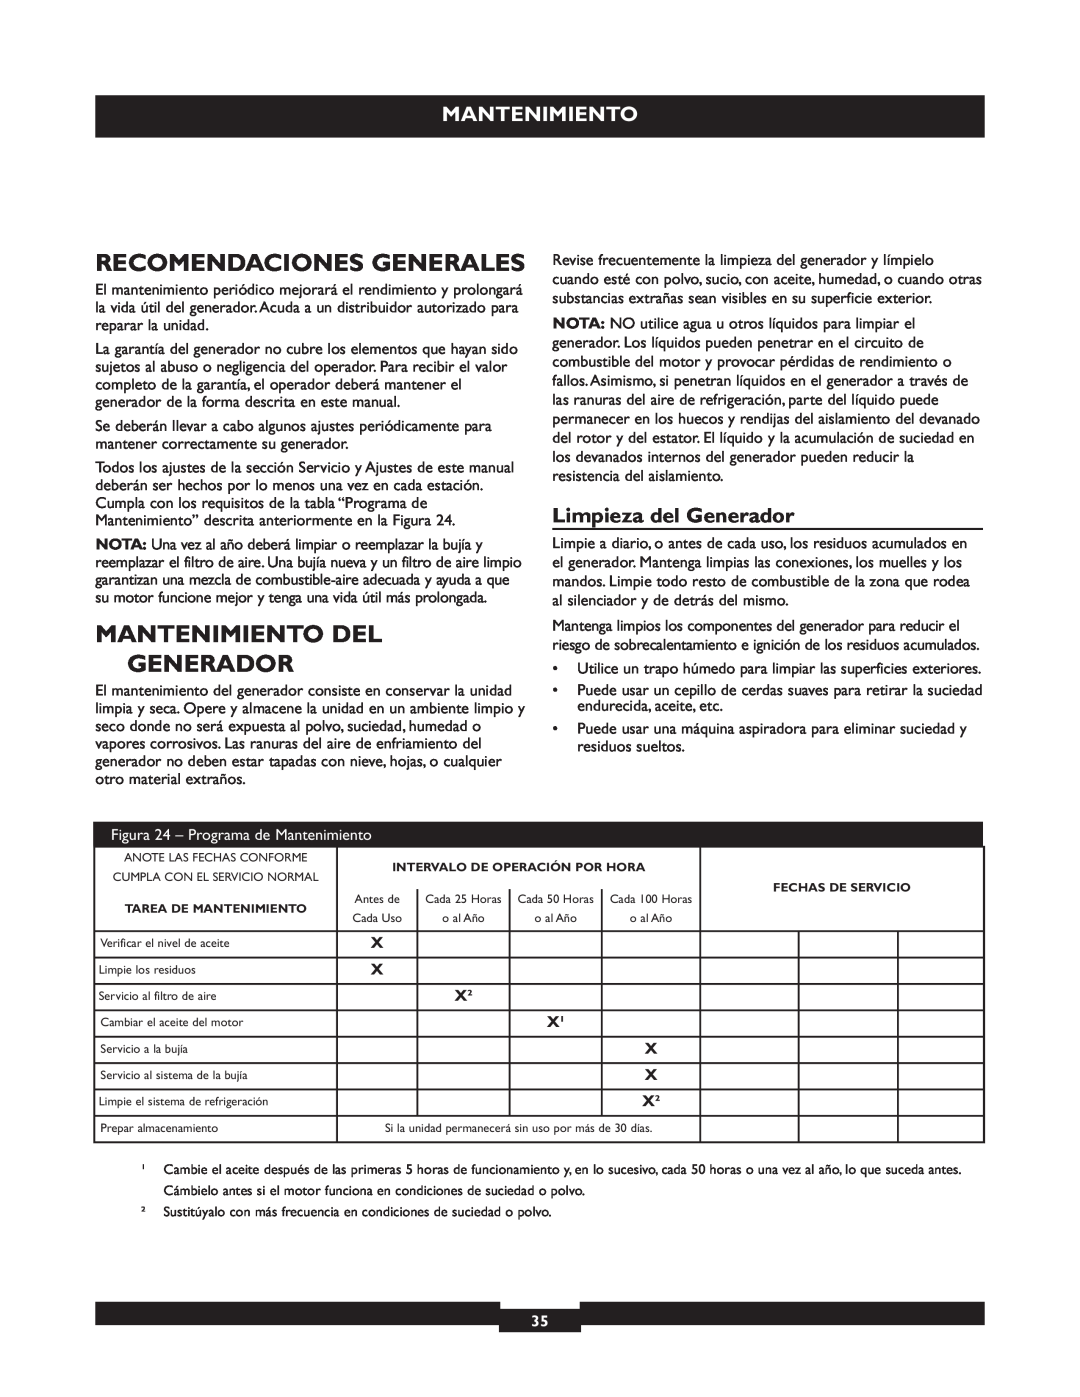 Briggs & Stratton 30219 manual Recomendaciones Generales, Mantenimiento Del, Limpieza del Generador 